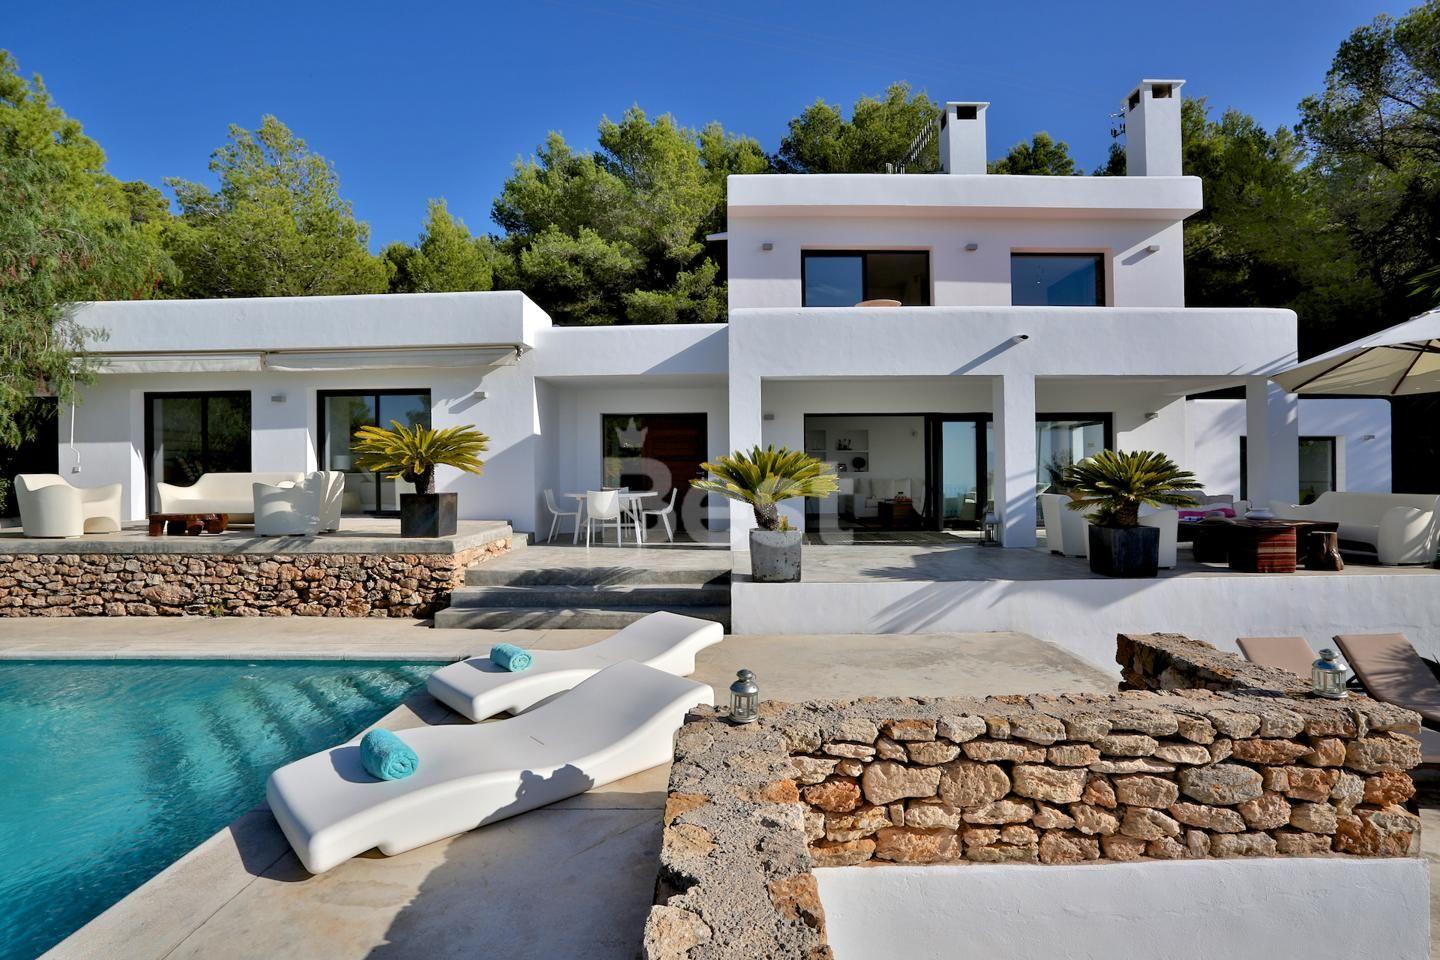 Rental home with tourist license near Cala Tarida, San Jose, Ibiza. Casa en alquiler con licencia turística cerca de Cala Tarida